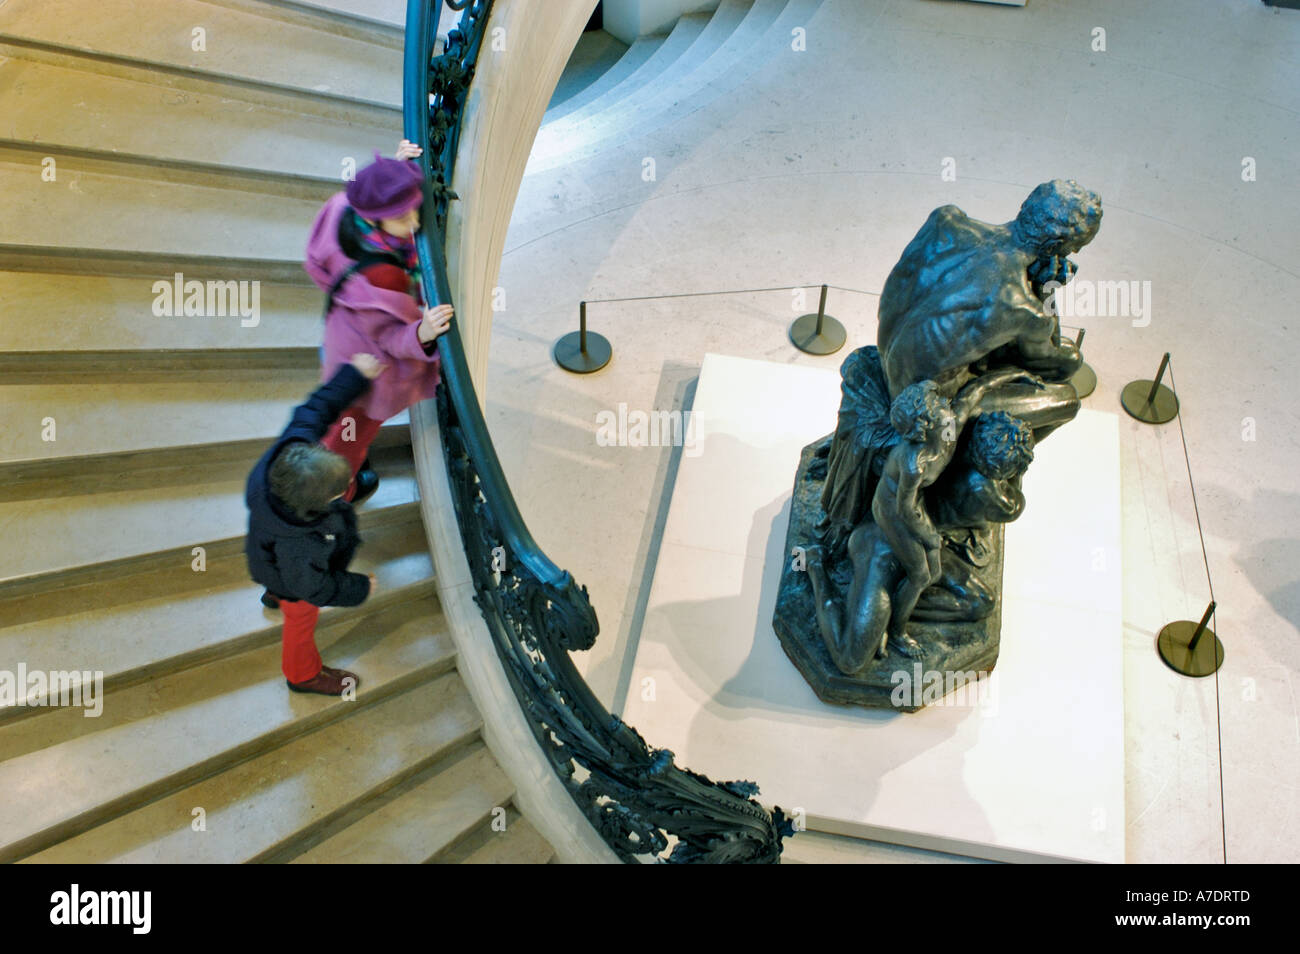 Paris France, Interior Stairway Art Museum the 'Petit Palais' 'Musée des Beaux Arts de la Ville de Paris' Children on Stairs, exposition universelle Stock Photo